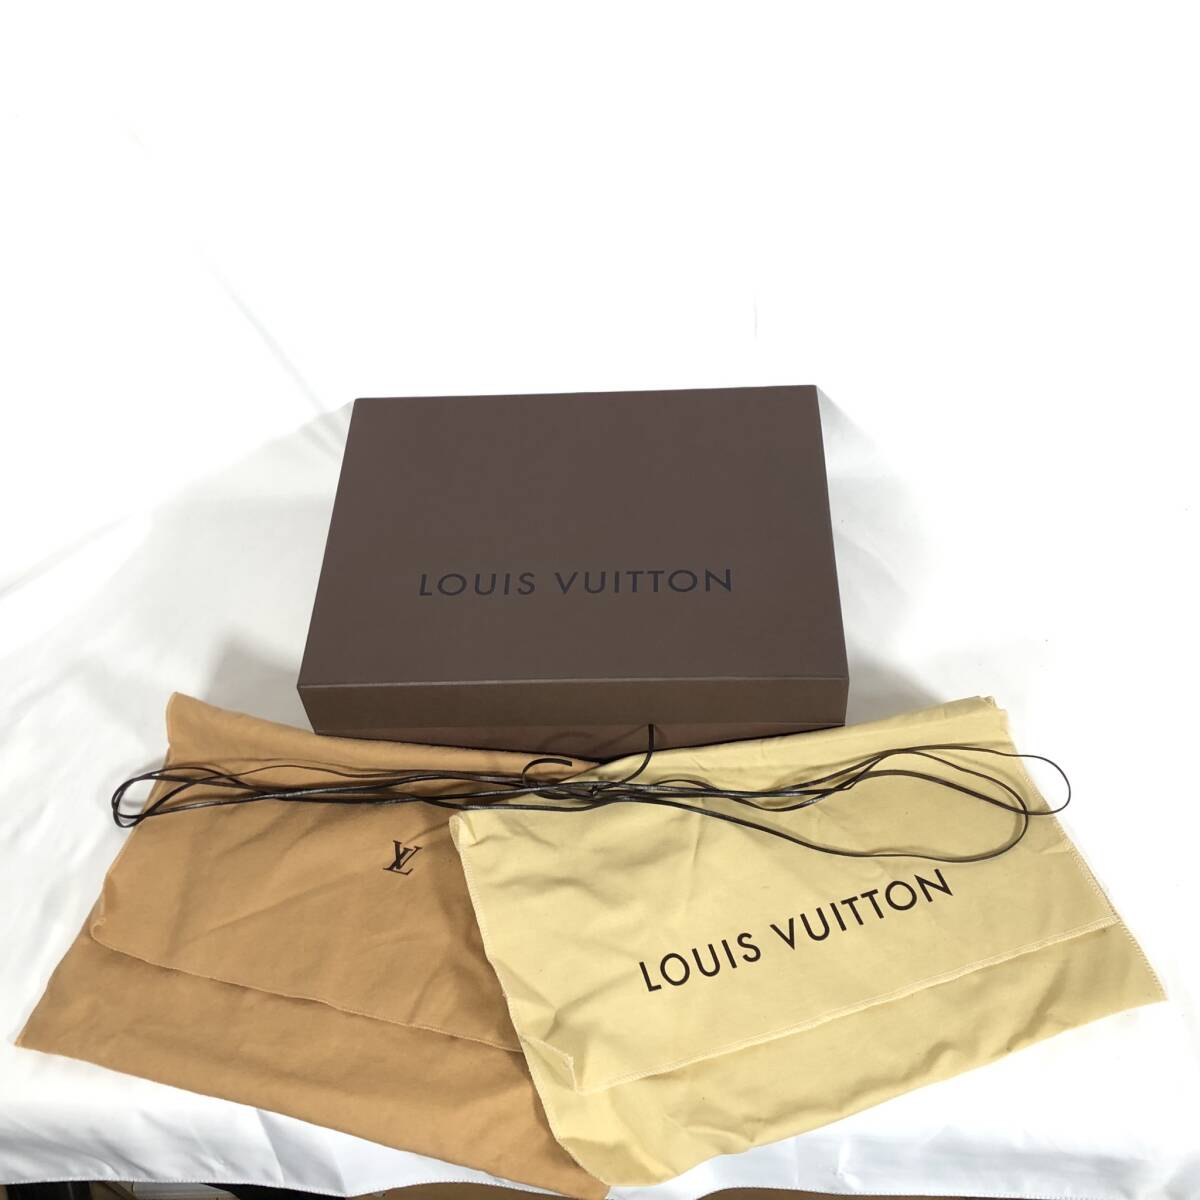 K) LOUIS VUITTON ルイヴィトン 空き箱 ボックス 箱のみ 保存袋×2 ひも 27×35.5×10.5㎝ B2708_画像1